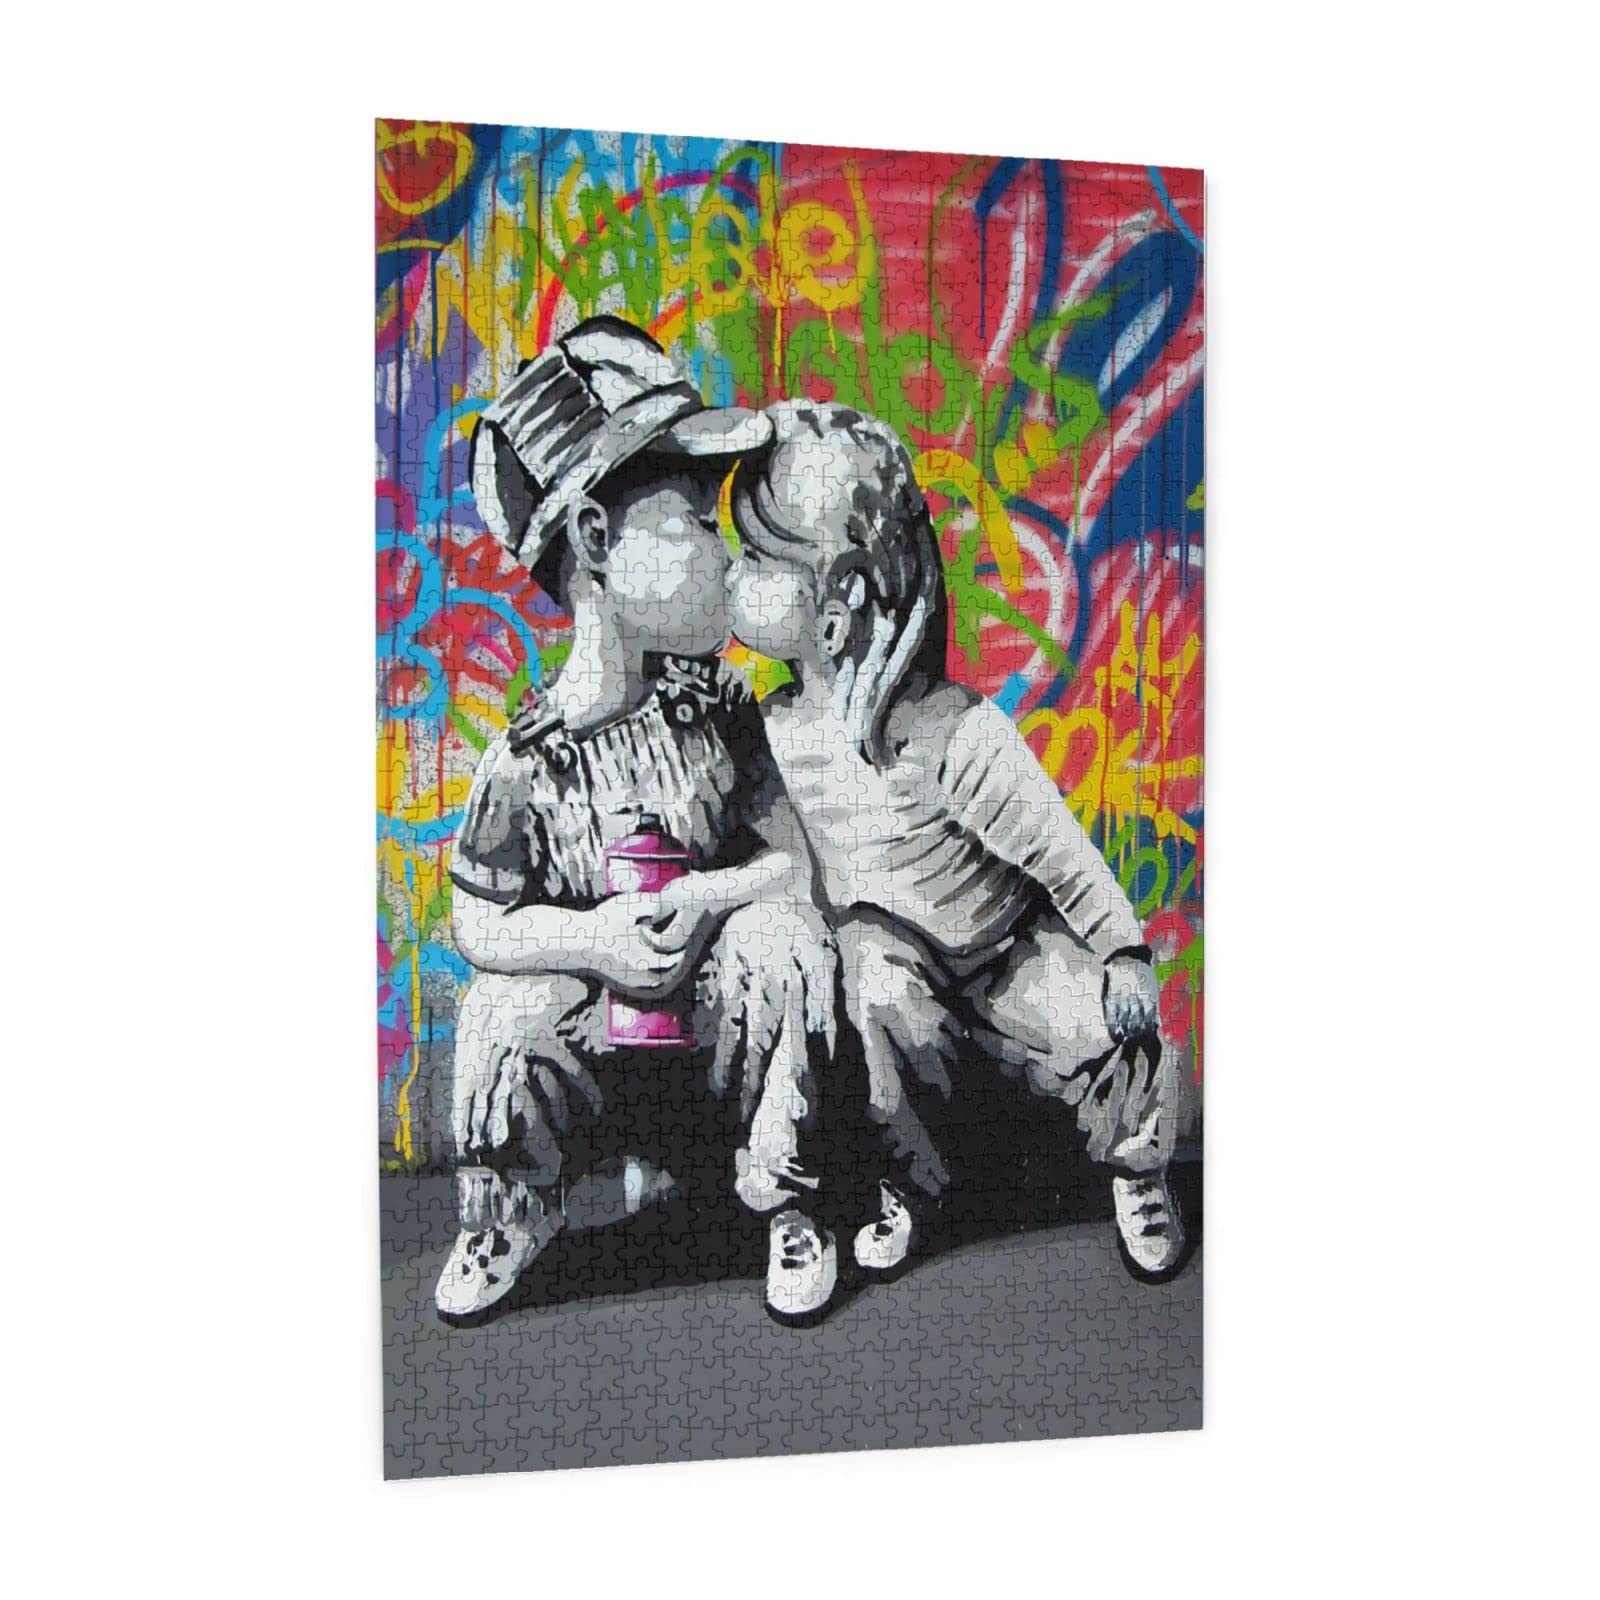 1000ピース ジグソーパズル Banksy バンクシー モダンアート 木製パズル 壁飾り パズル装飾画 収納ケース付き おもちゃ 知育減圧 親子ゲ